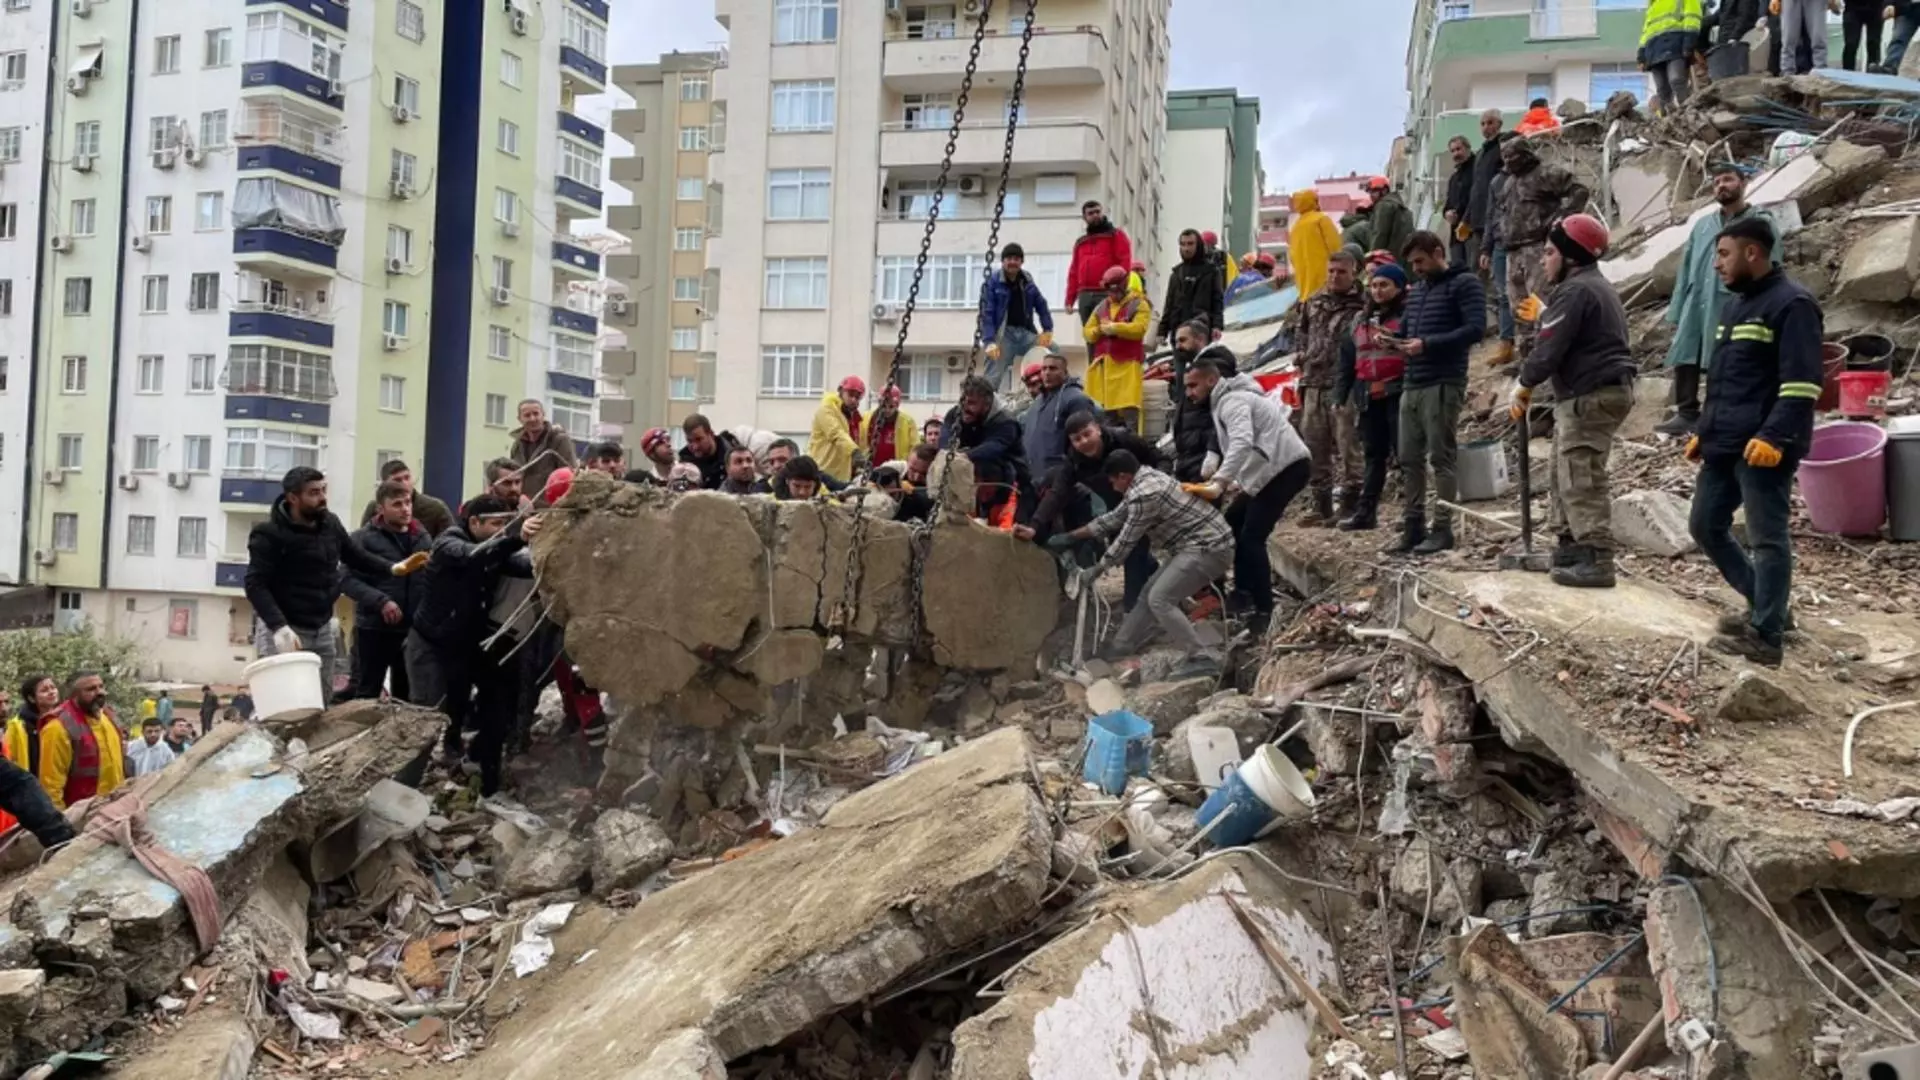 A 4-a zi după cutremurul din Turcia - Misiuni dramatice de căutări după catastrofa umanitară - Mărturiile unui salvator român